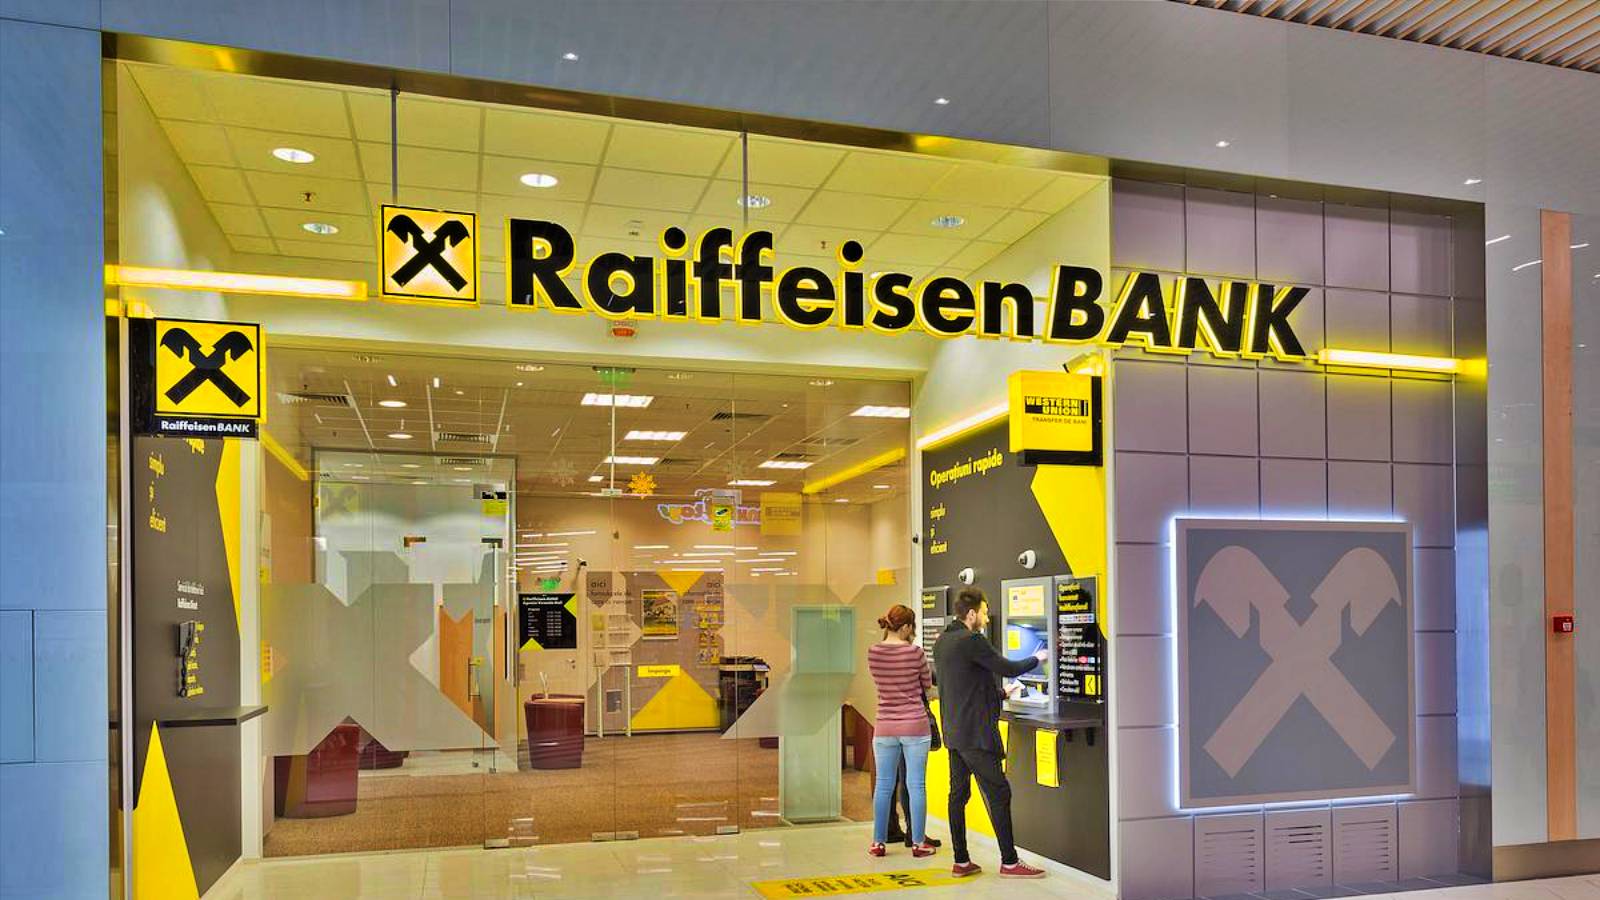 Raiffeisen Bank schimbari oficiale